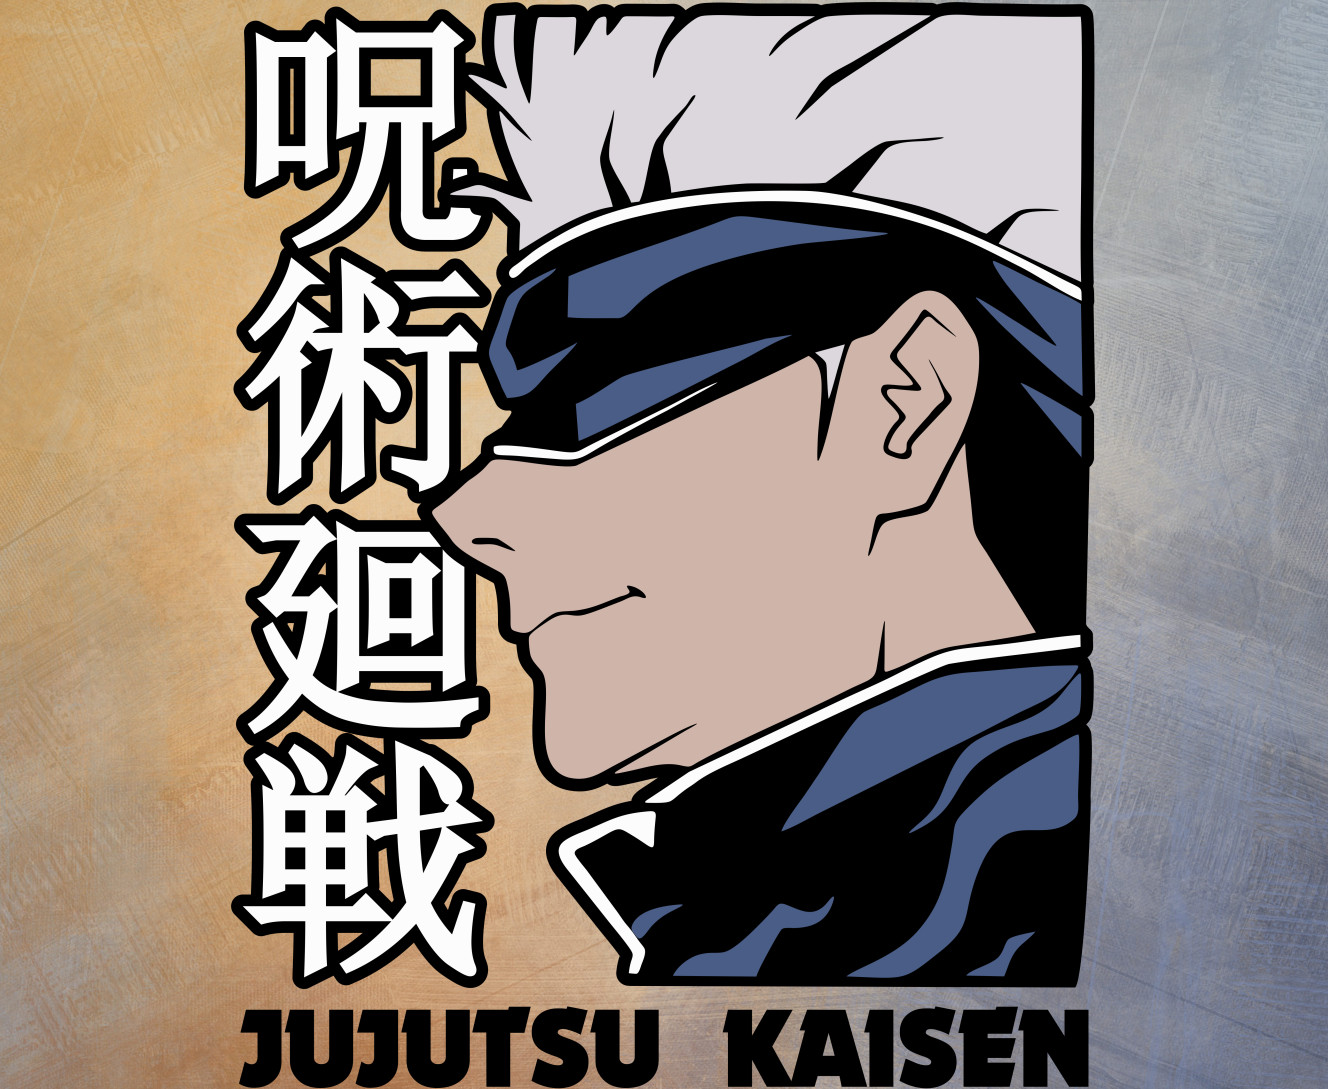 Магическая битва - Mousepad - Jujutsu Kaisen - Mfest